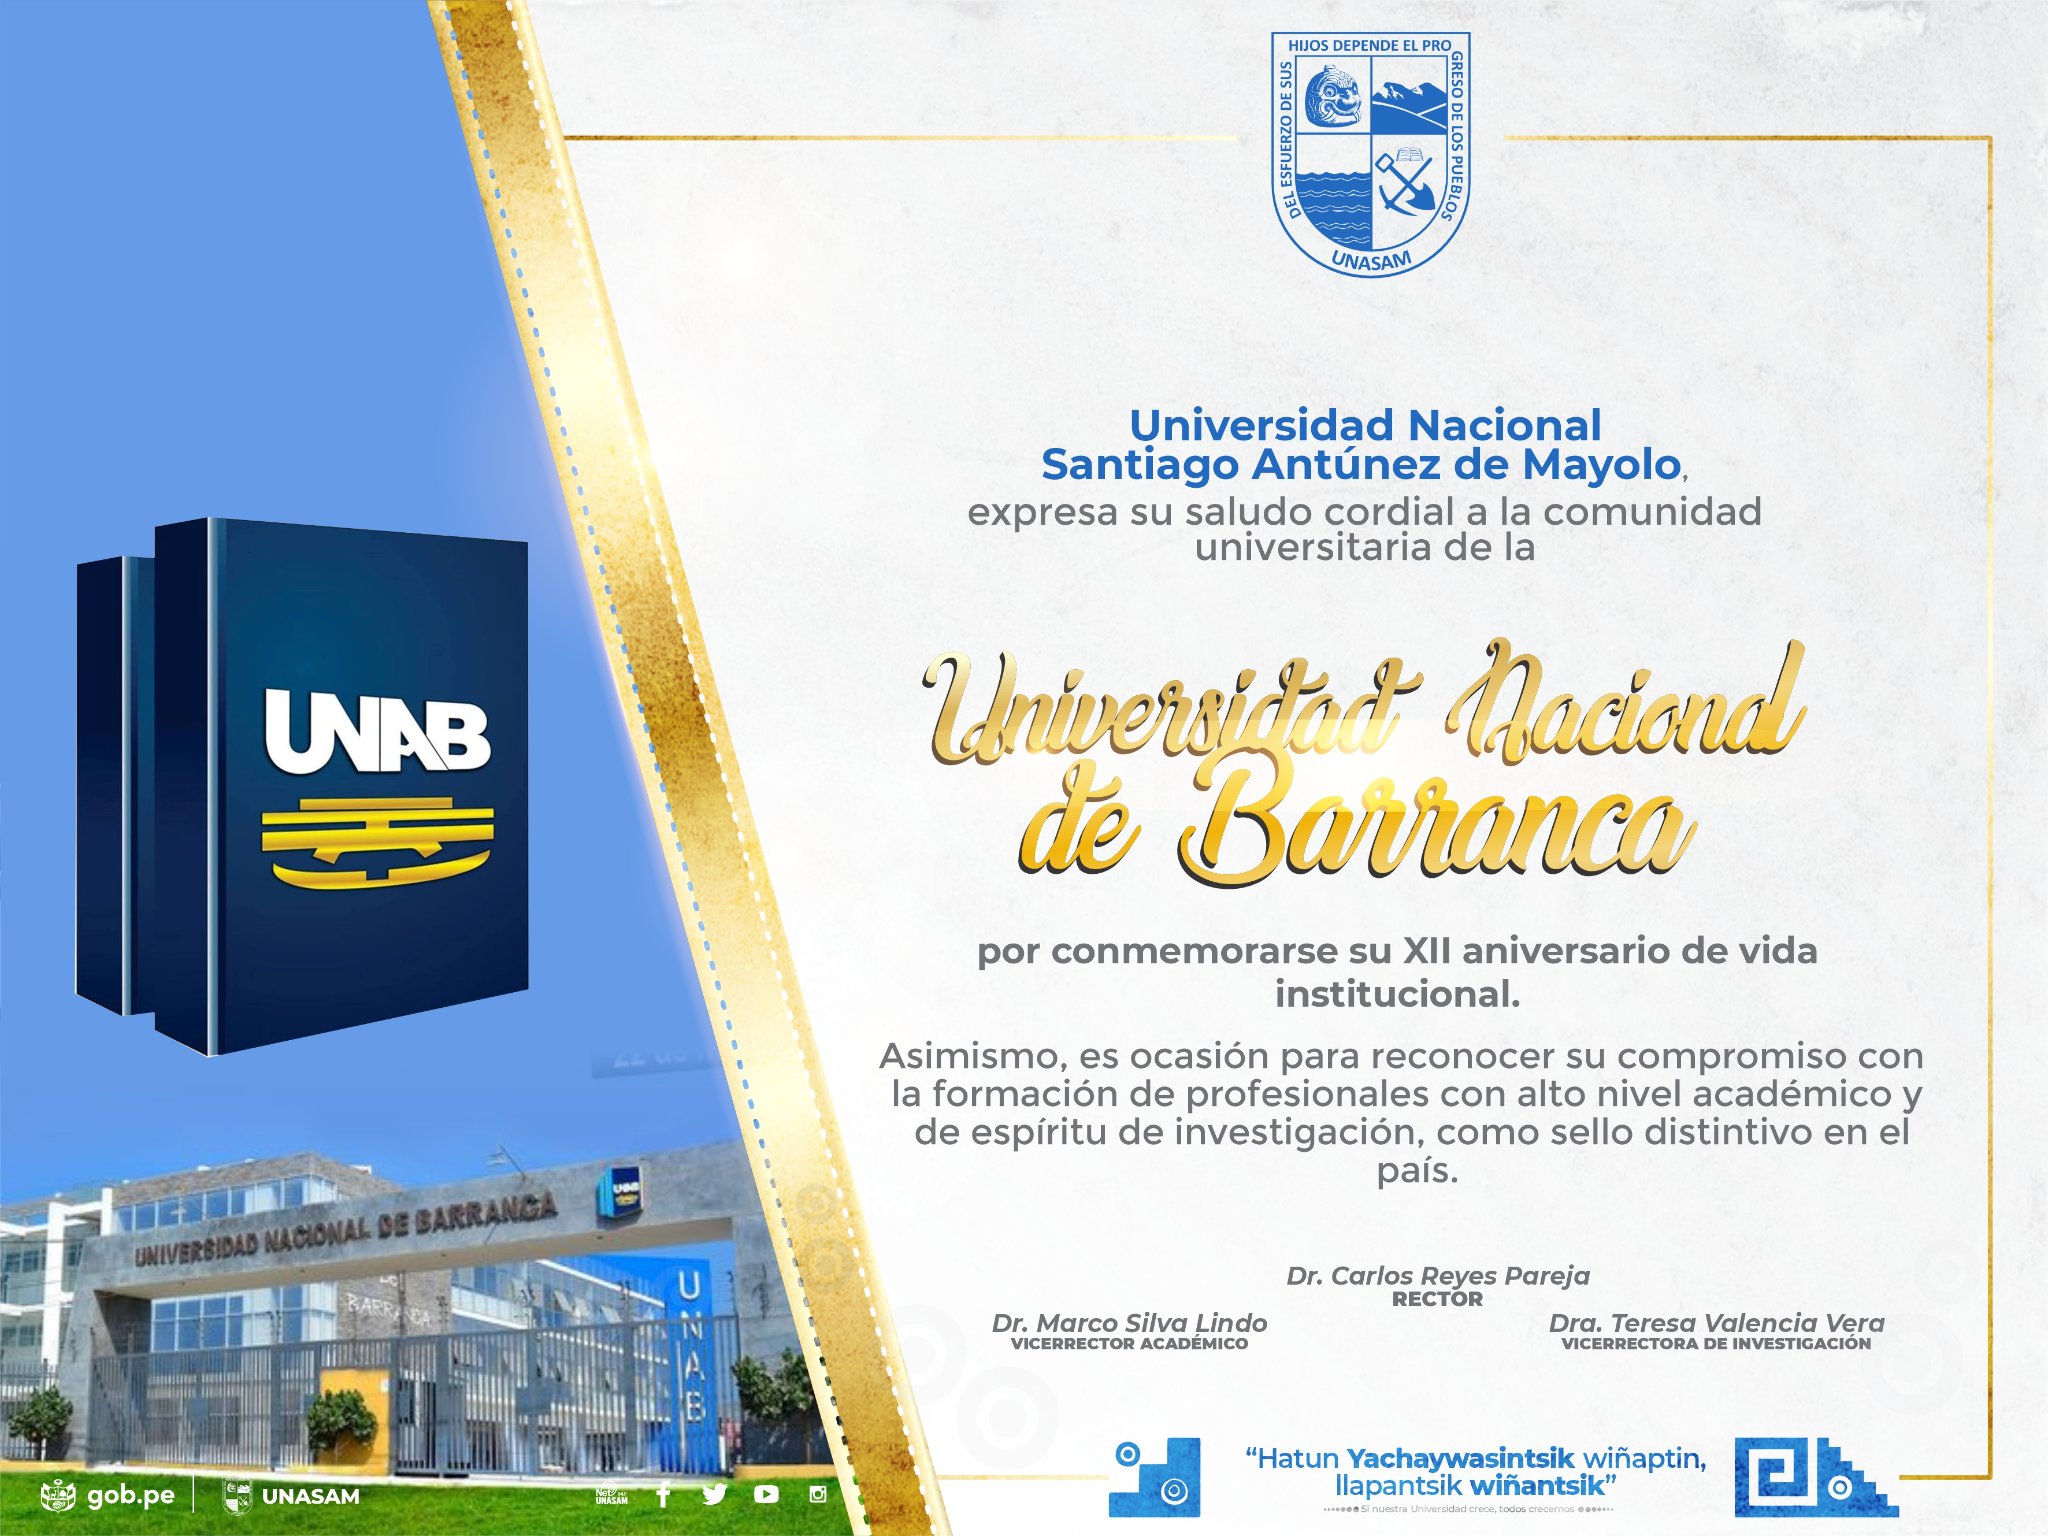  														Unasam expresa su saludo cordial a la comunidad universitaria de la Universidad Nacional de Barranca
														